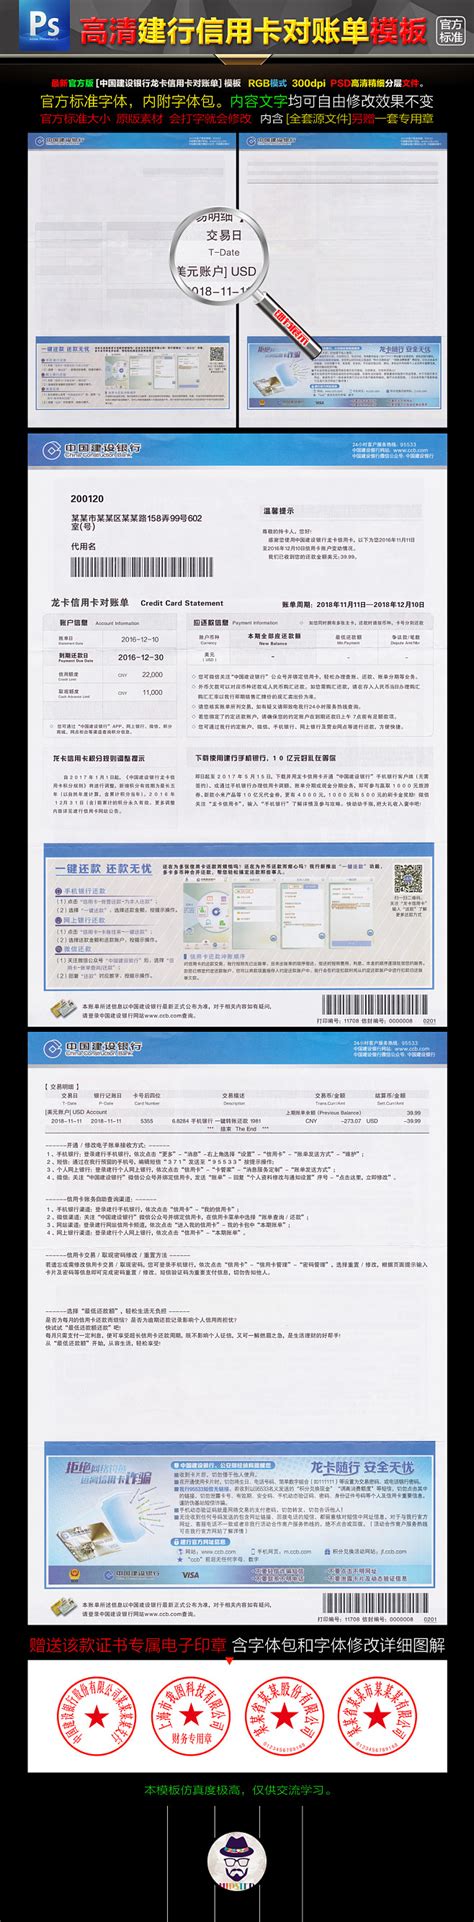 中国银行visa卡的账单时间